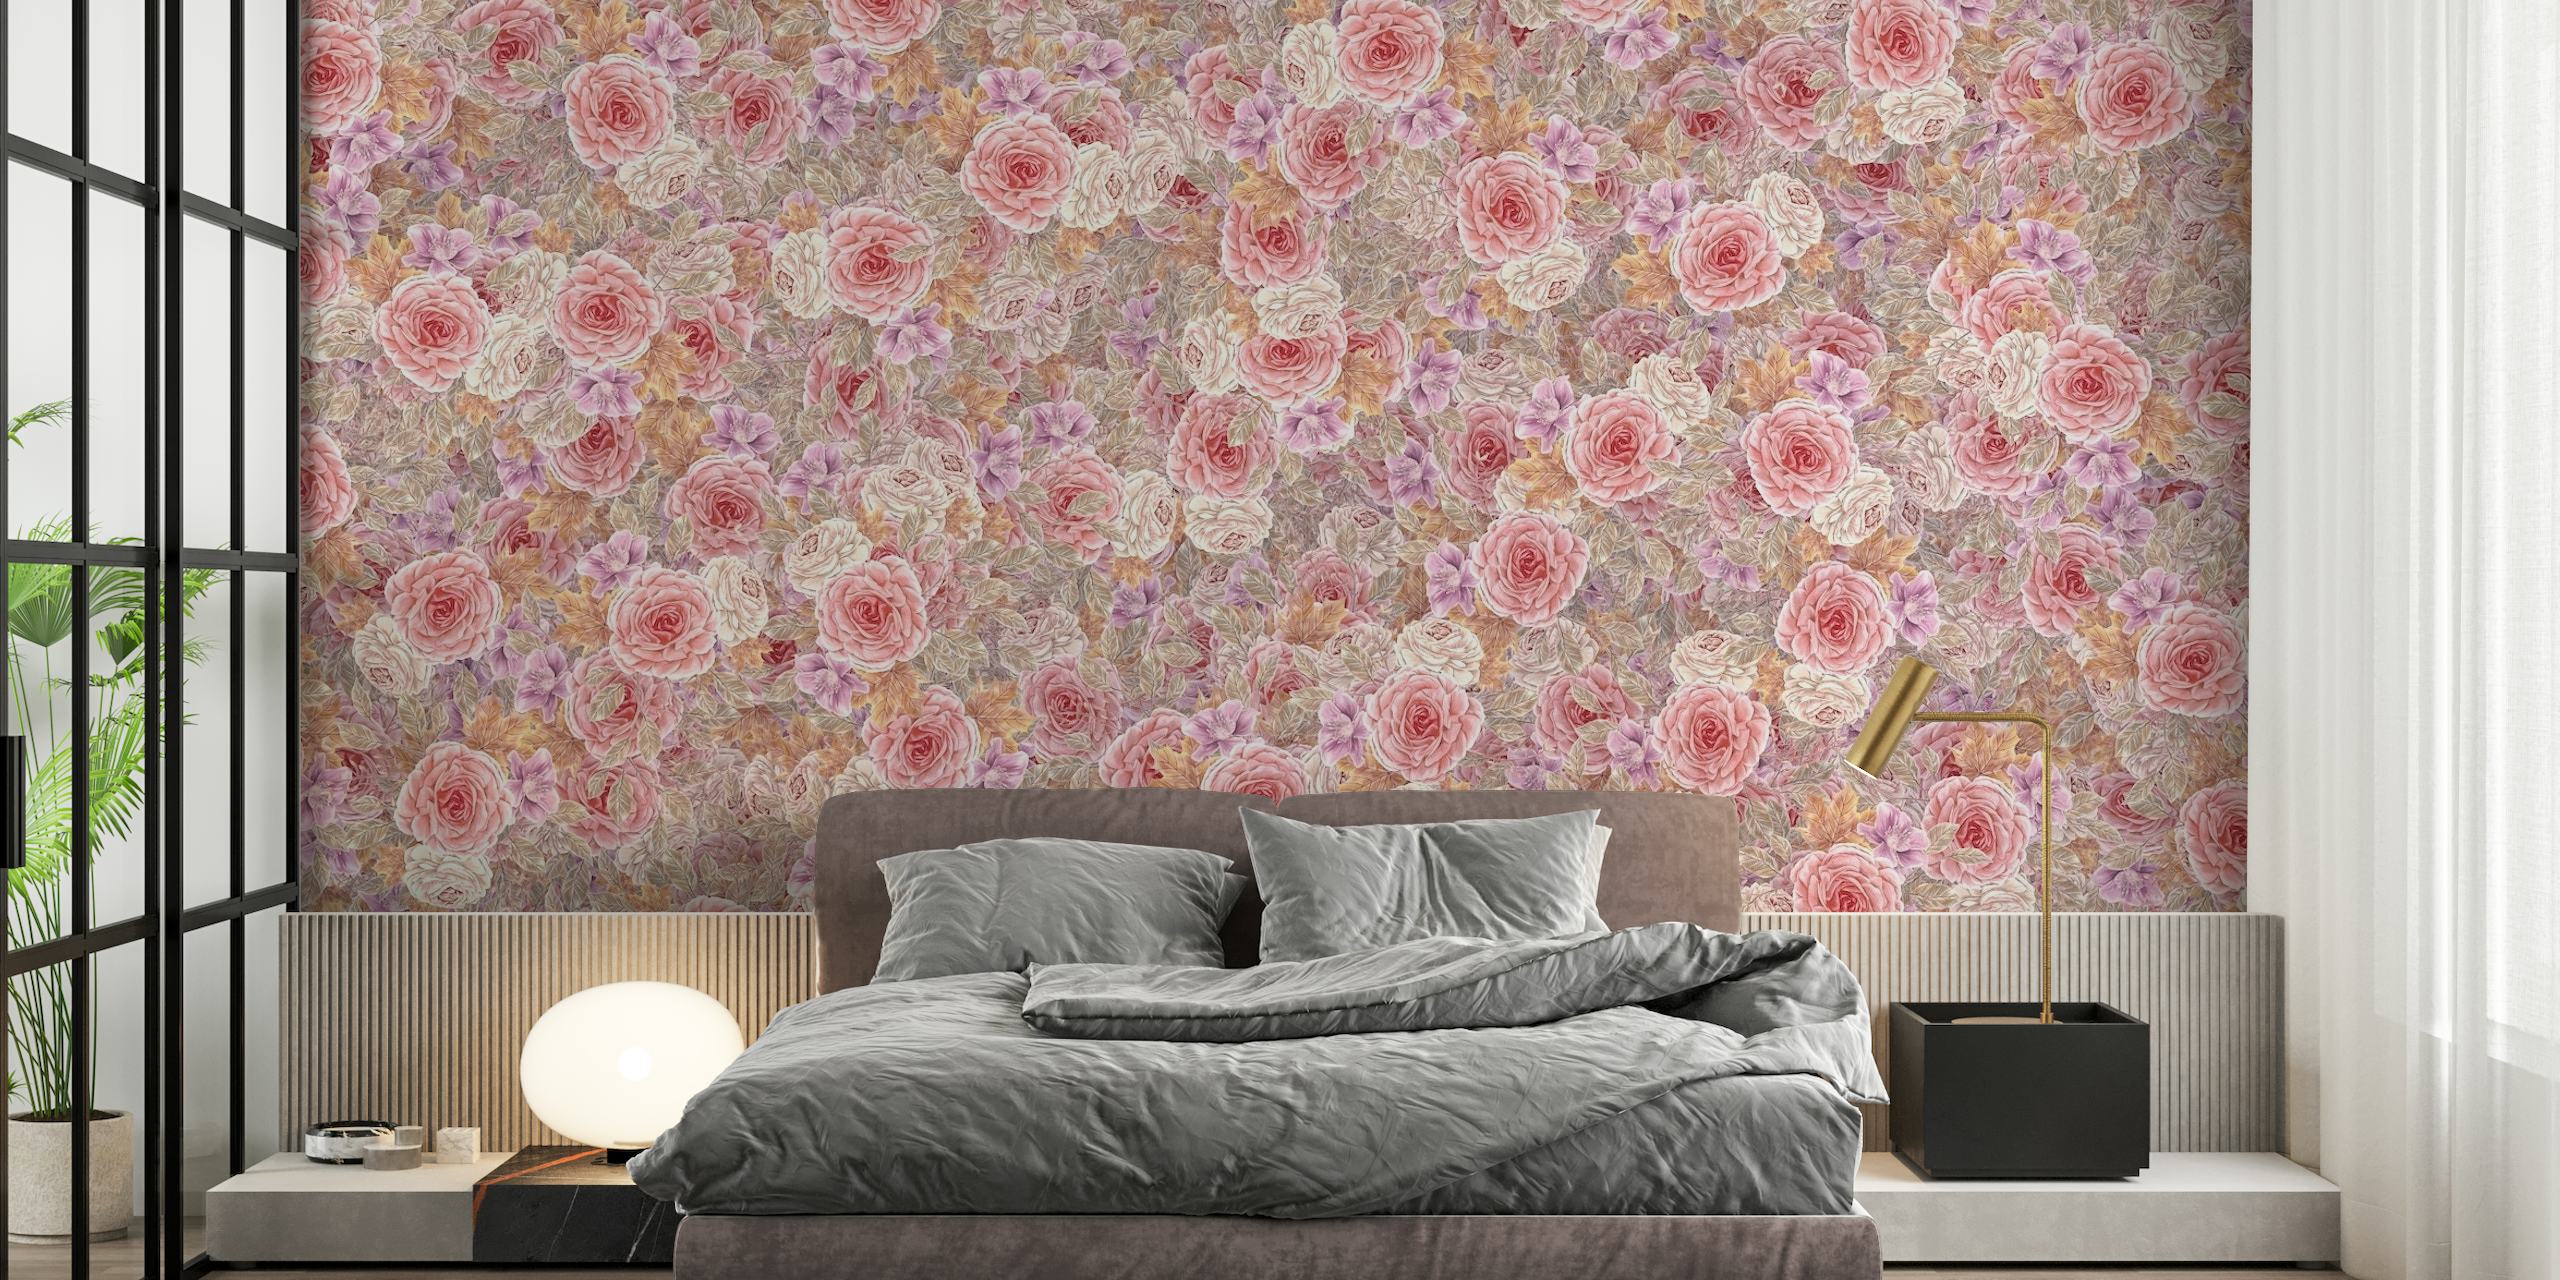 Roses de thé aquarelles en rose, orange, lilas et taupe sur une fresque murale